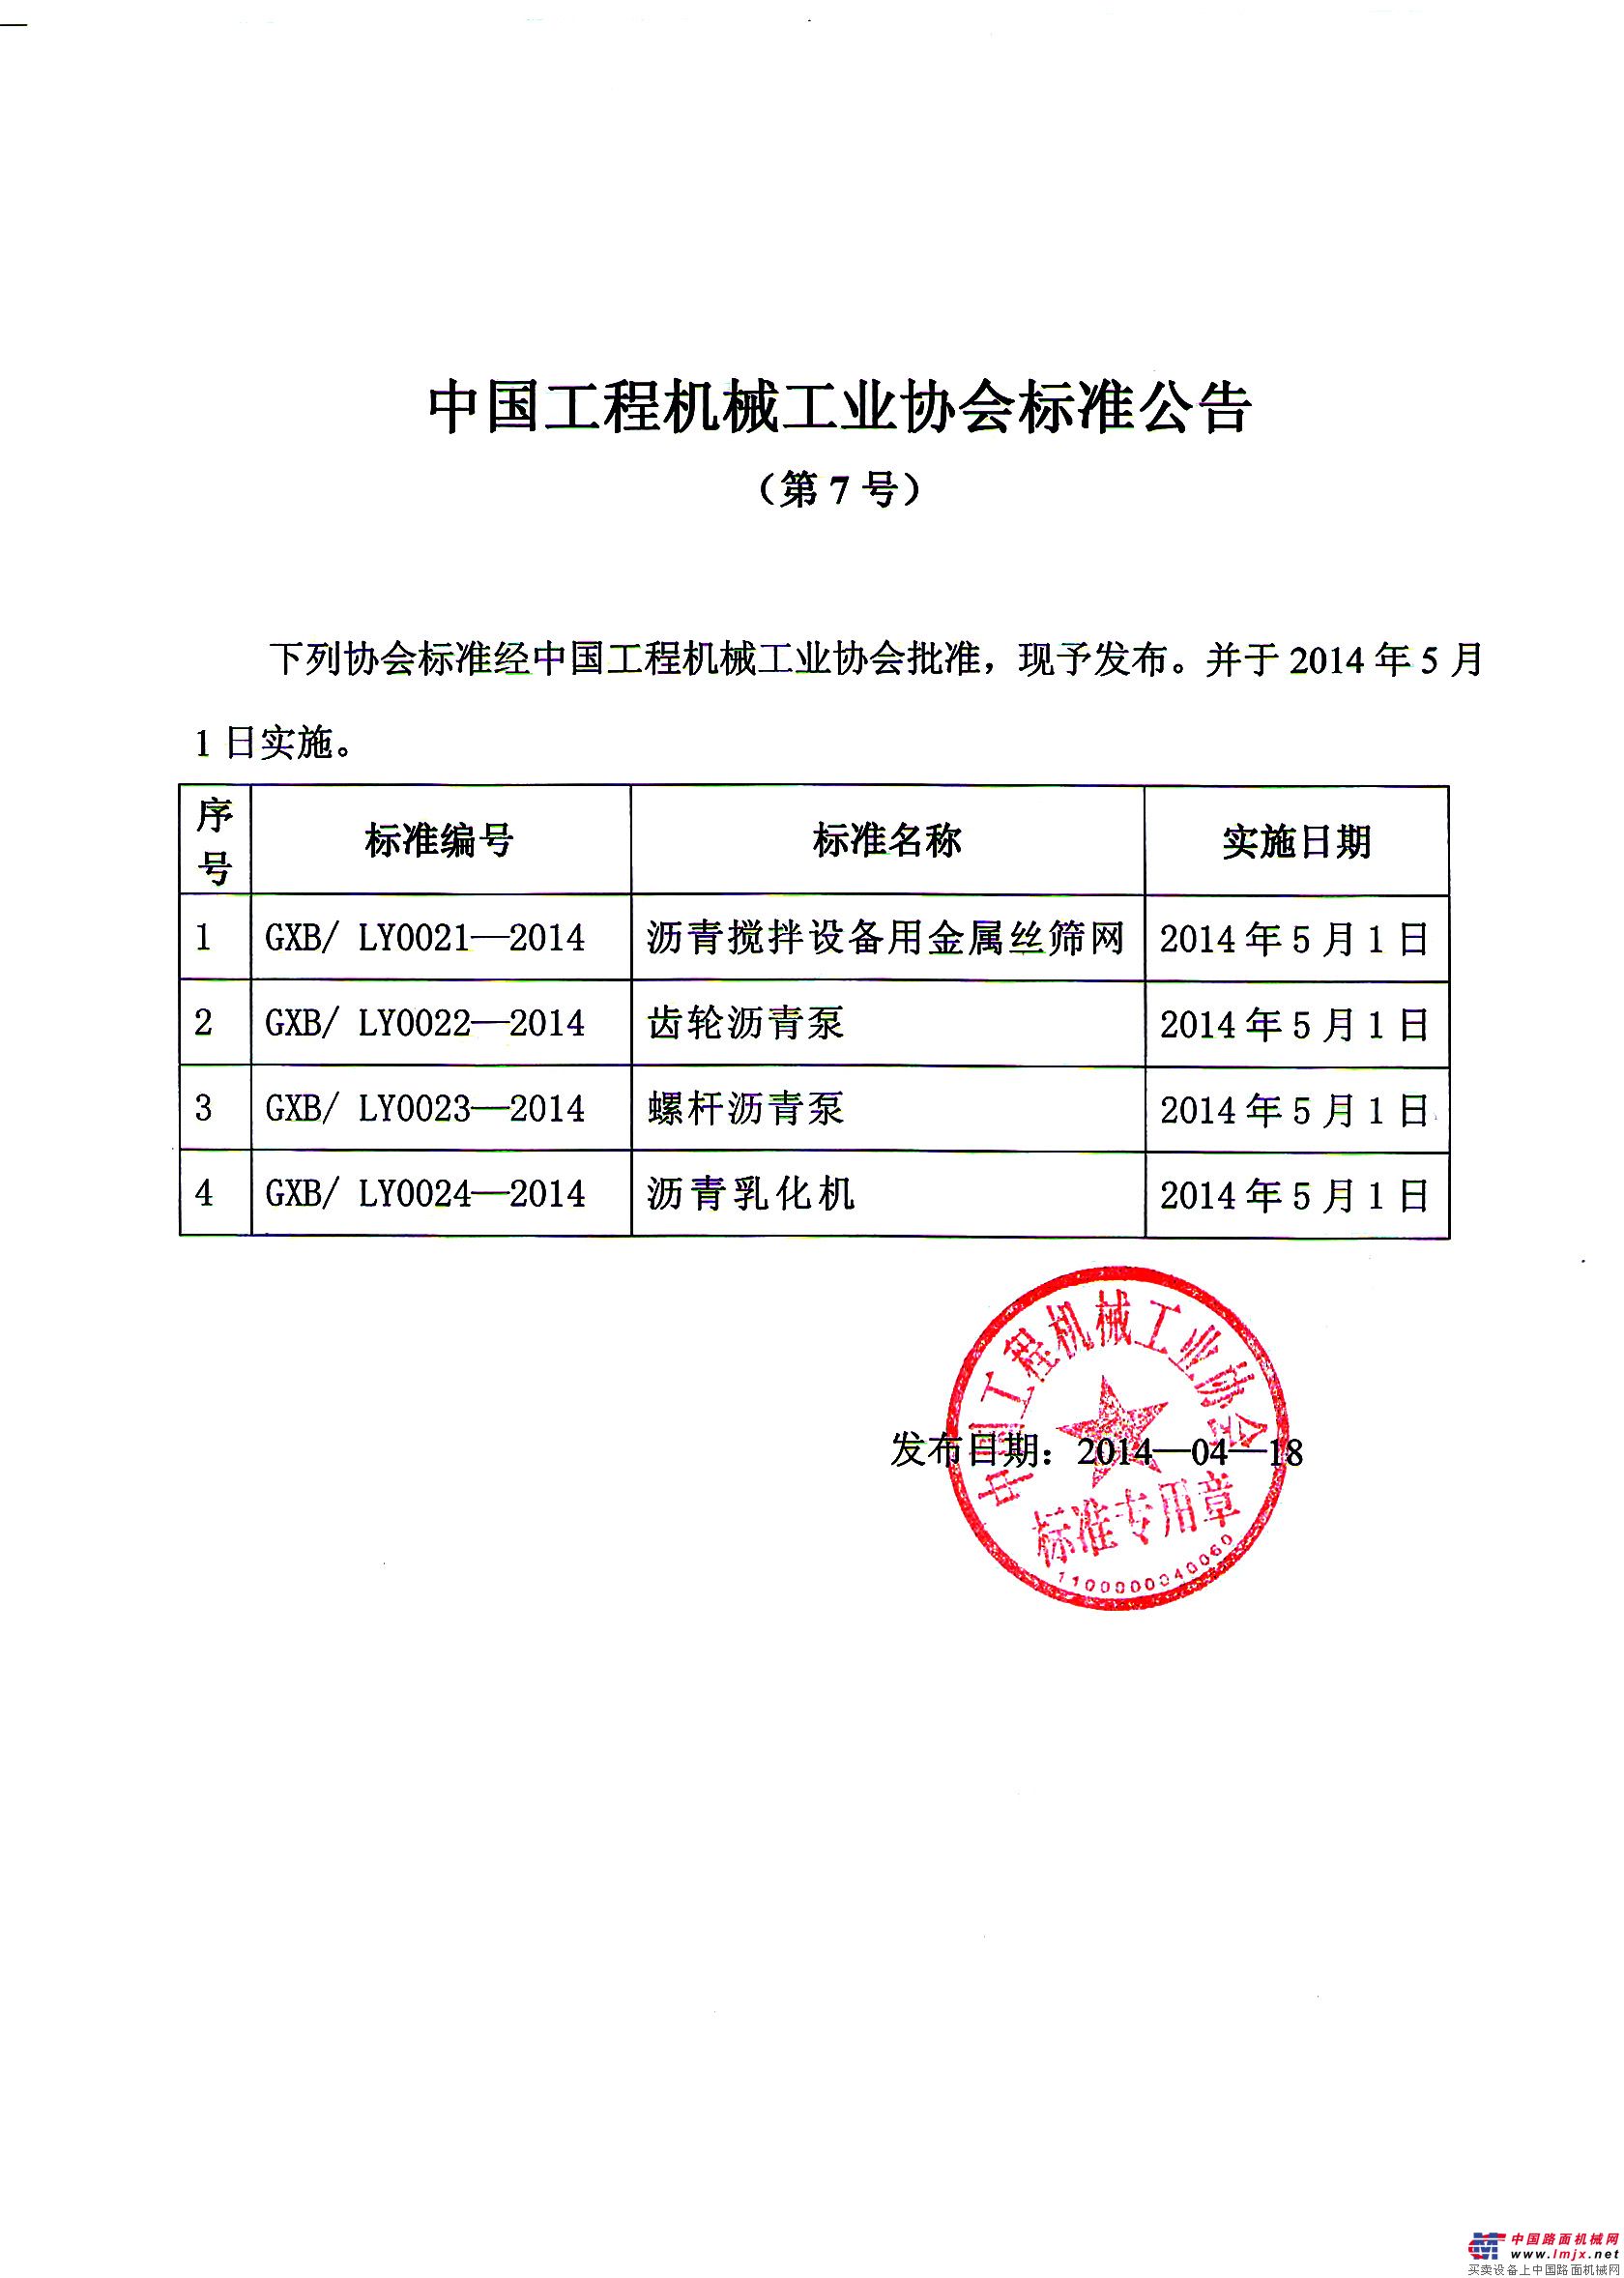 《沥青搅拌设备用金属丝筛网》等中国工程机械工业协会标准发布